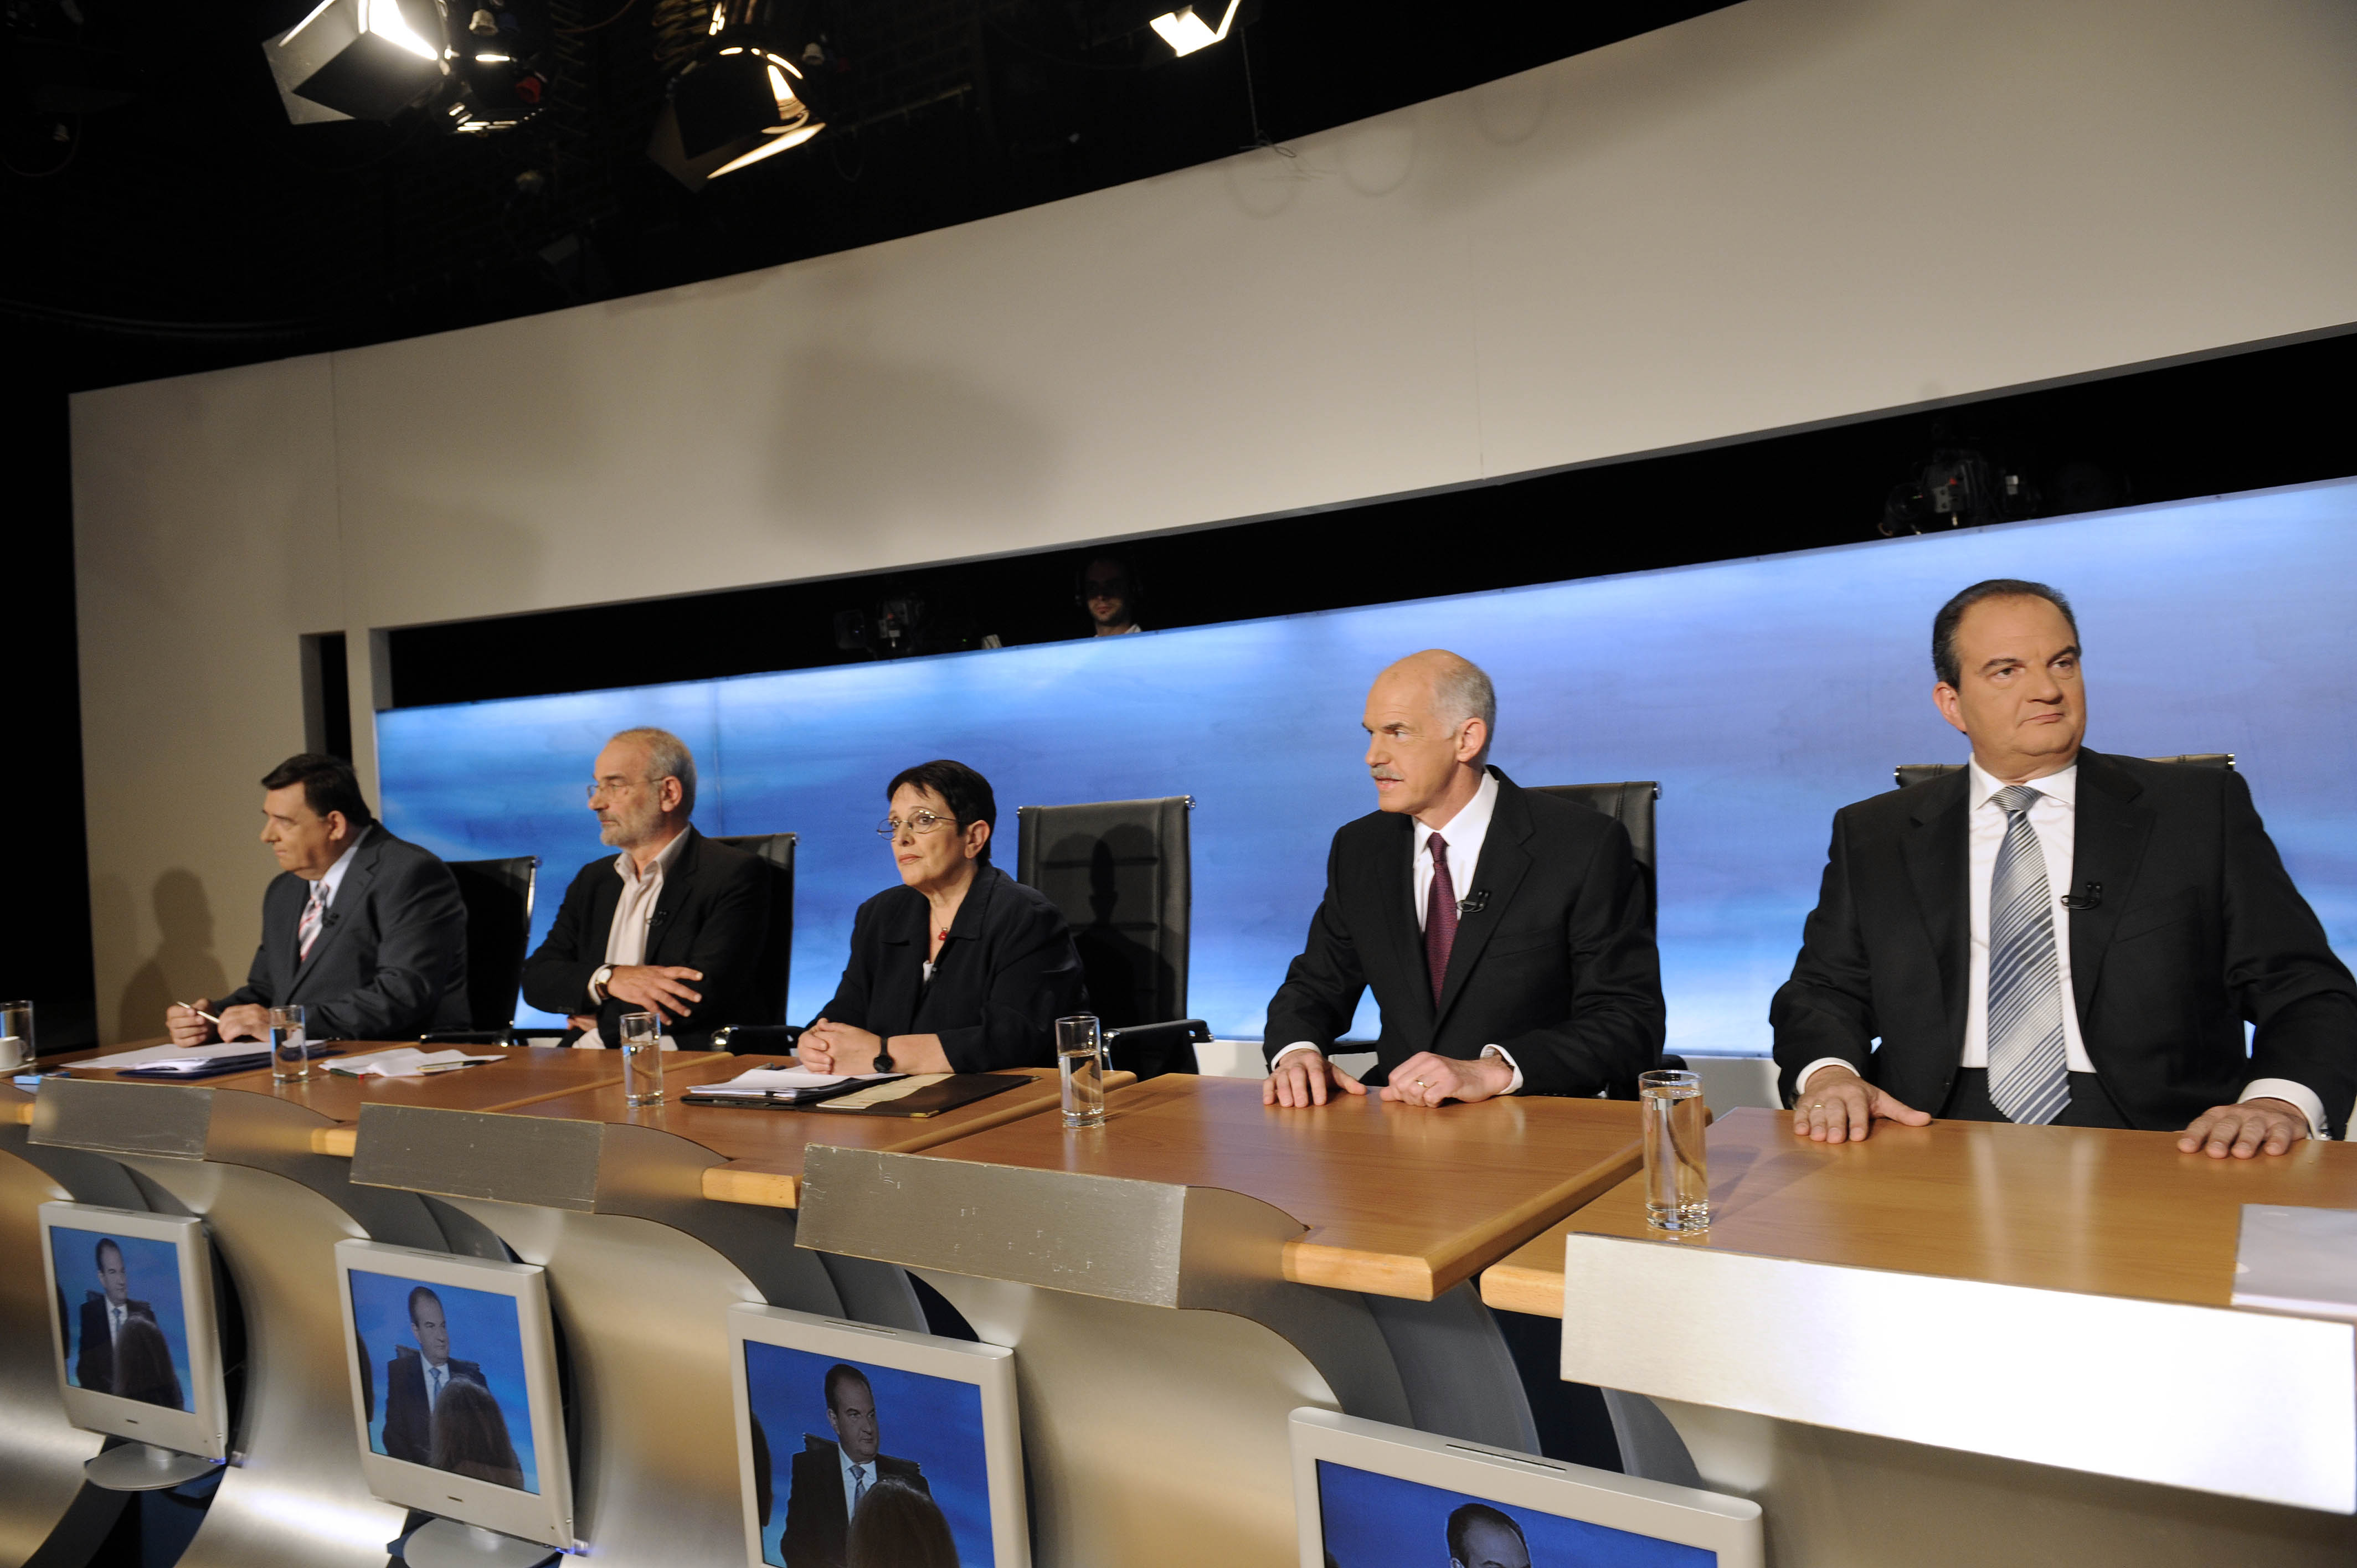 Το ντιμπέιτ των έξι πολιτικών αρχηγών και οι αλλαγές στο τηλεοπτικό πρόγραμμα